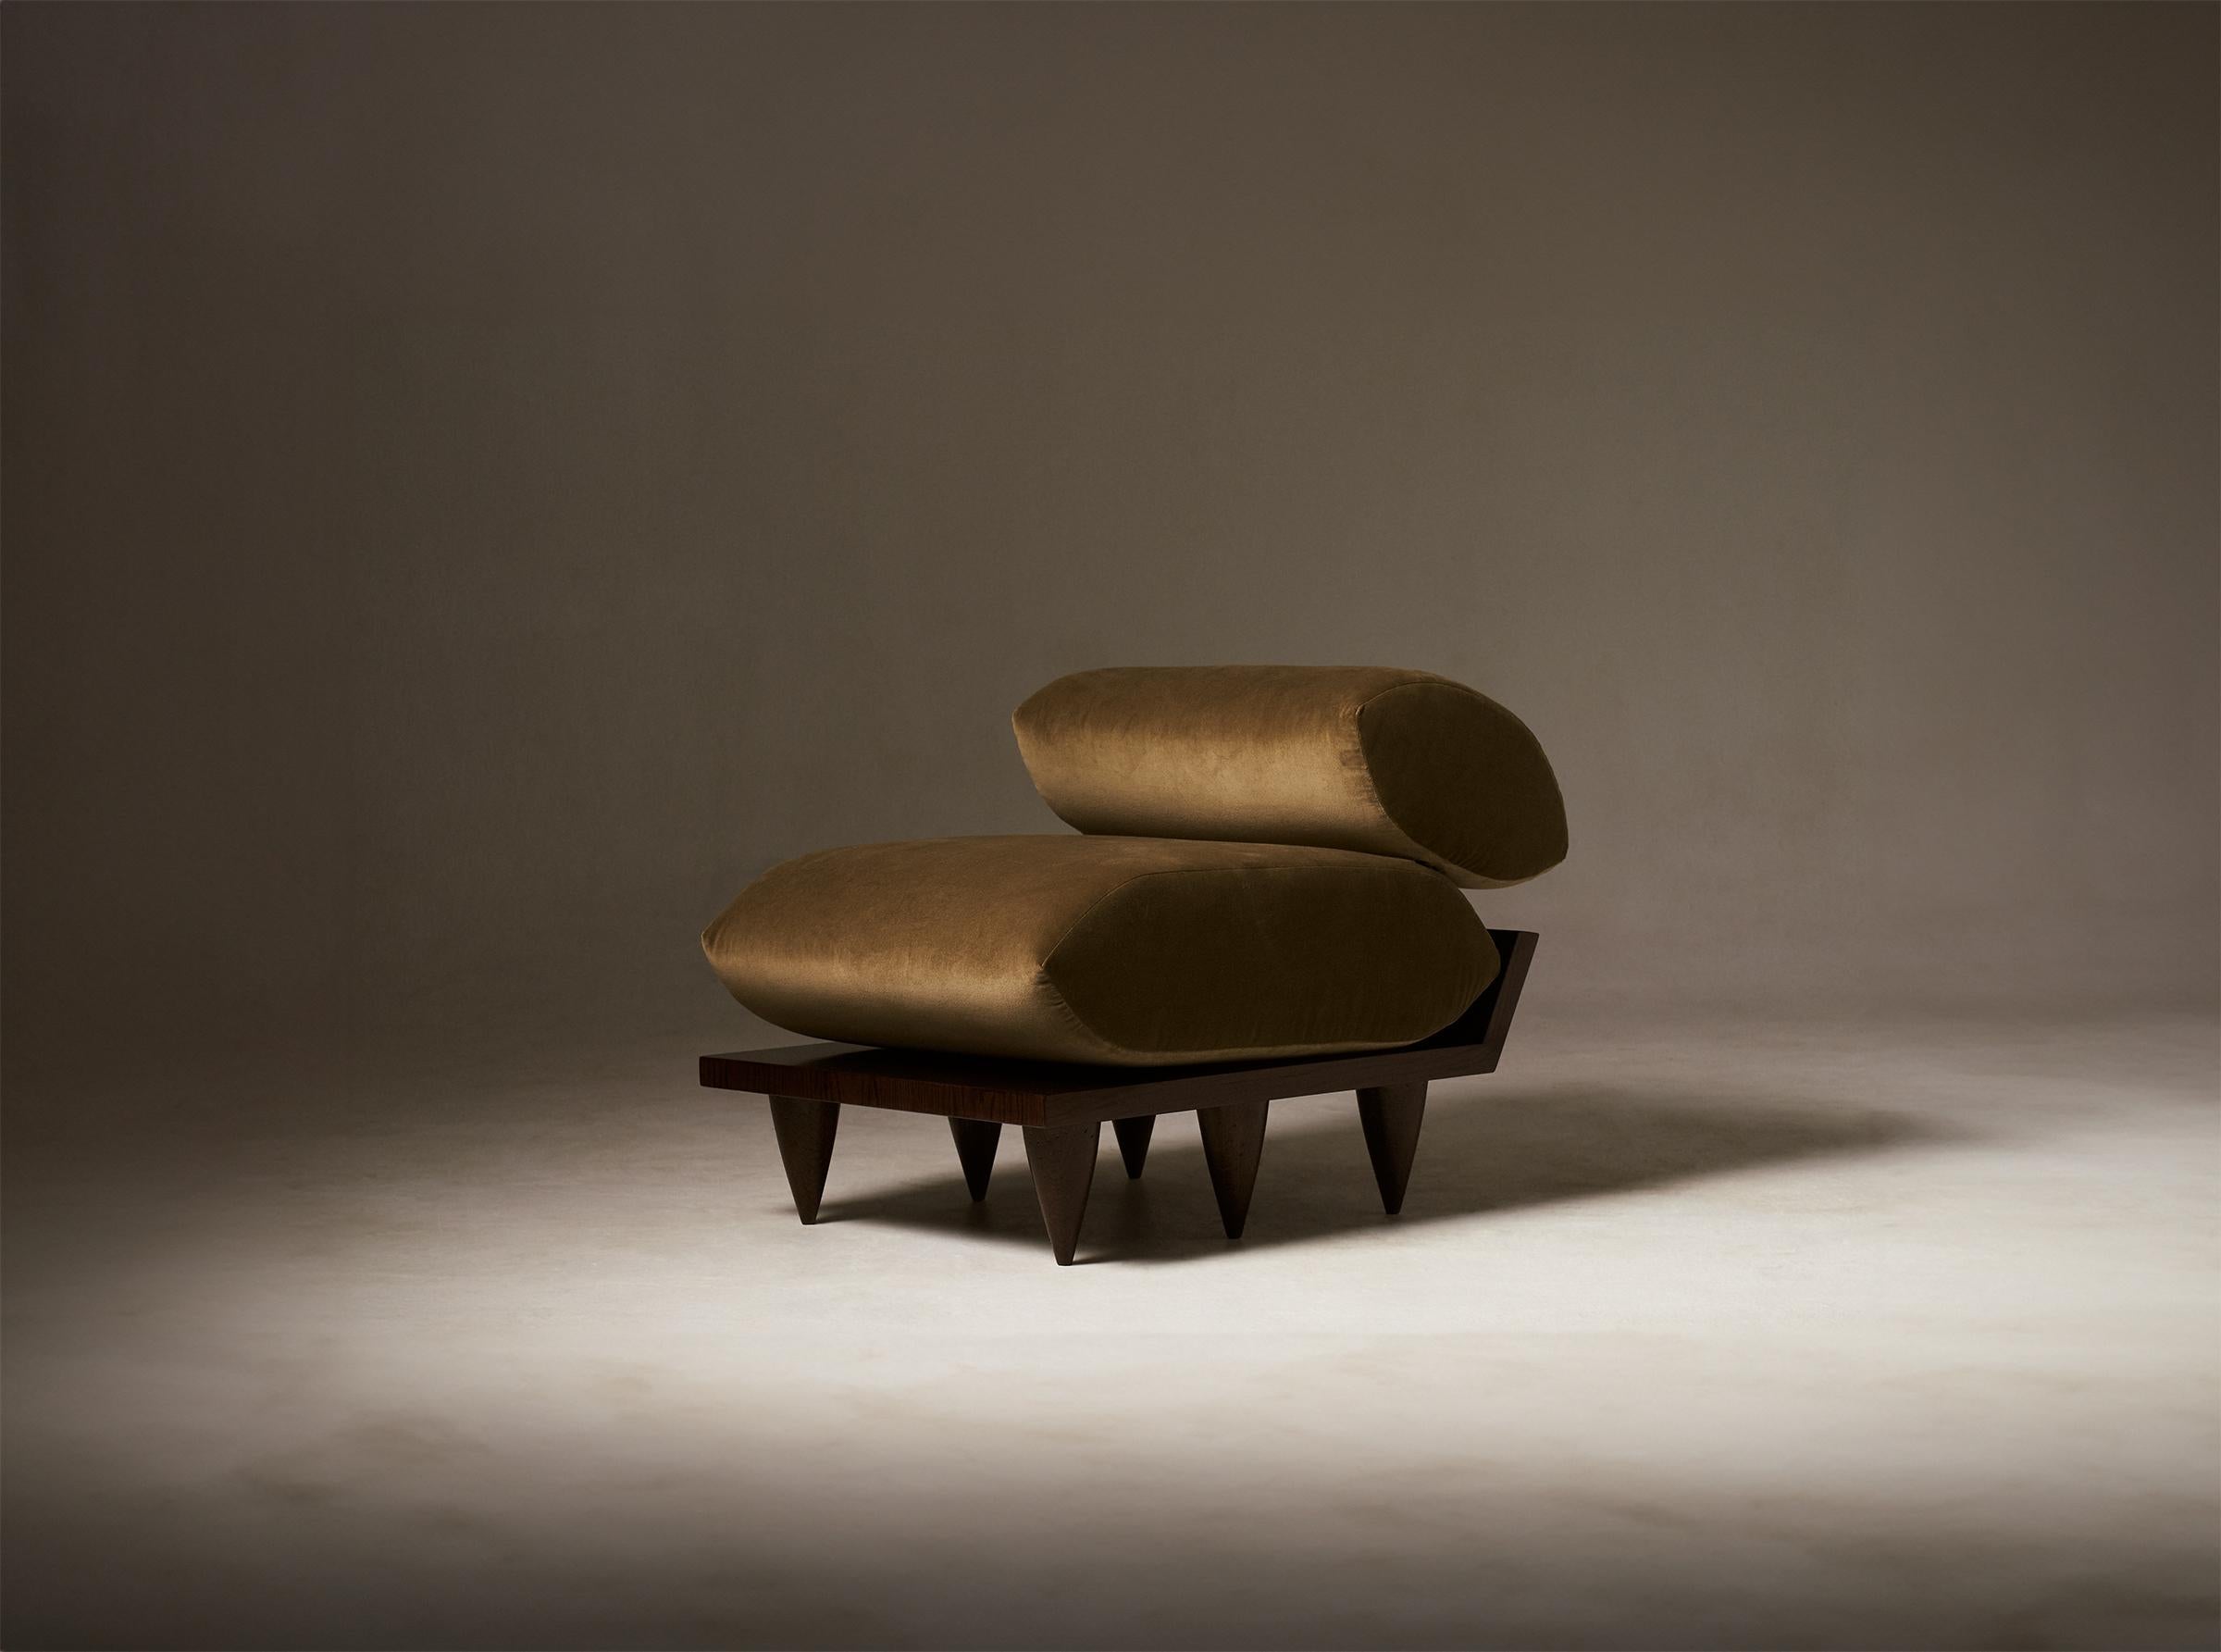 Der Patria Pillow Chair ist vom Süden Siziliens, marokkanischen Bankstühlen und afrikanischen Senufo-Hockern inspiriert.

Anpassungen:
Wählen Sie zwischen 6 oder 10 Beinen
*Bitte beachten Sie: Für zehn Beine wird ein Aufpreis